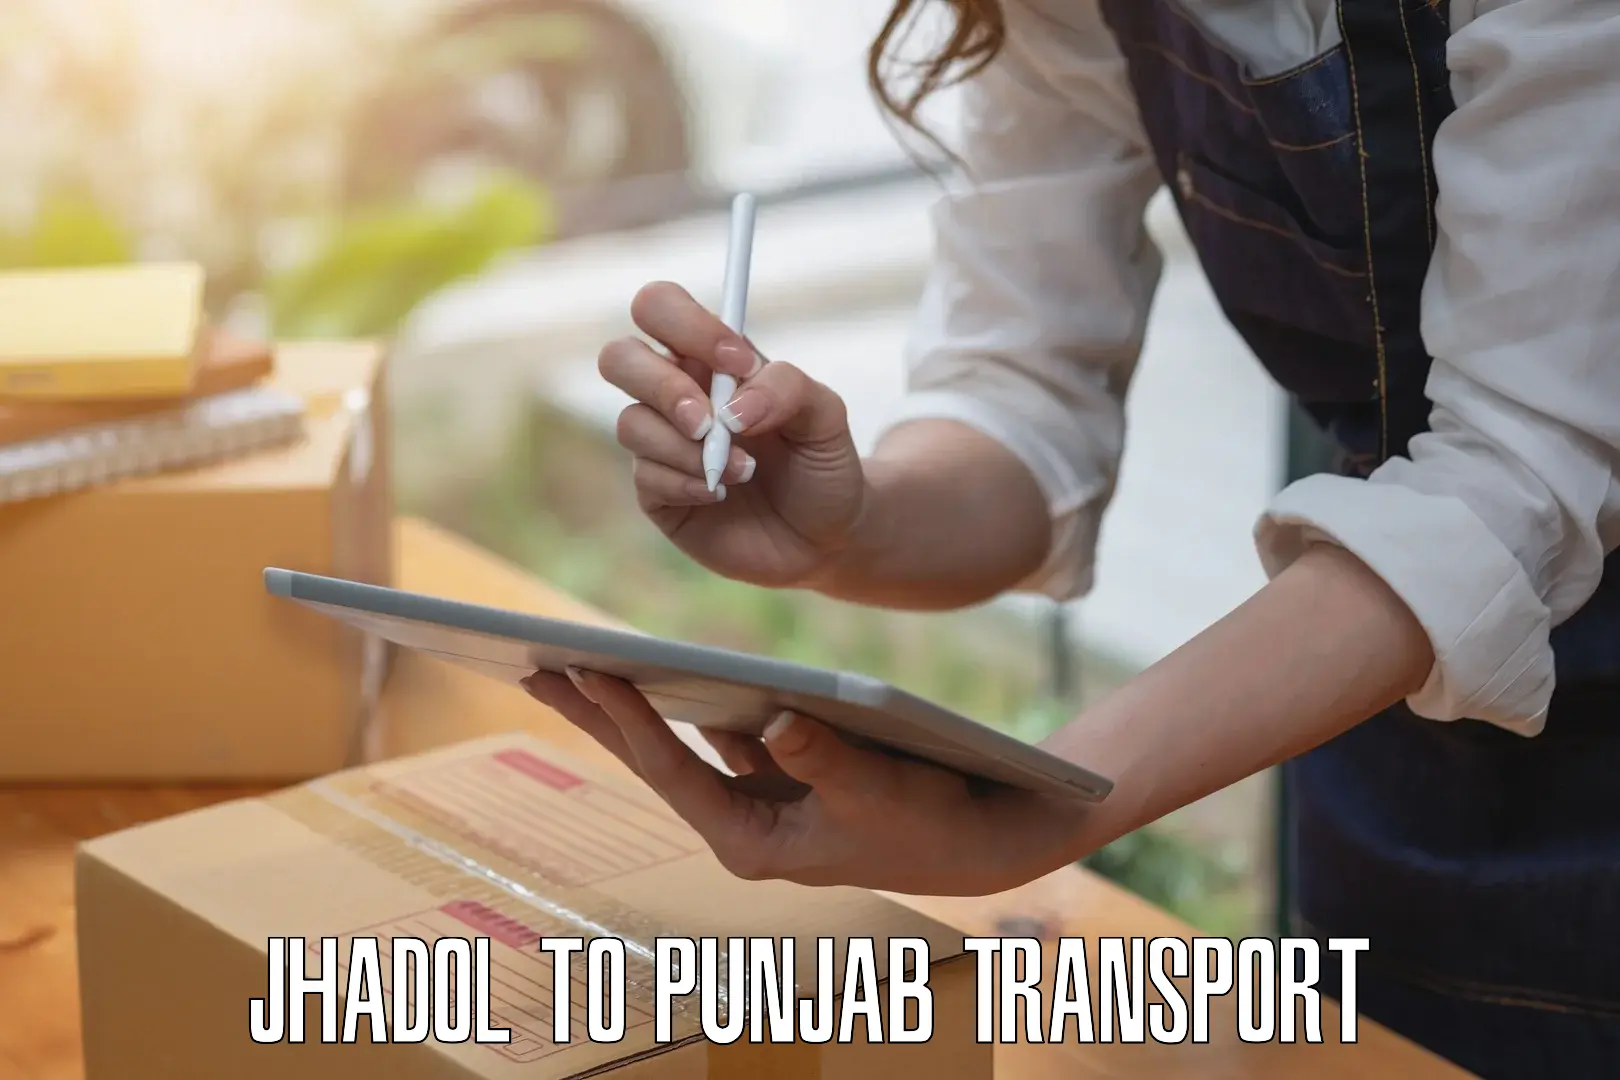 Bike transport service Jhadol to Punjab